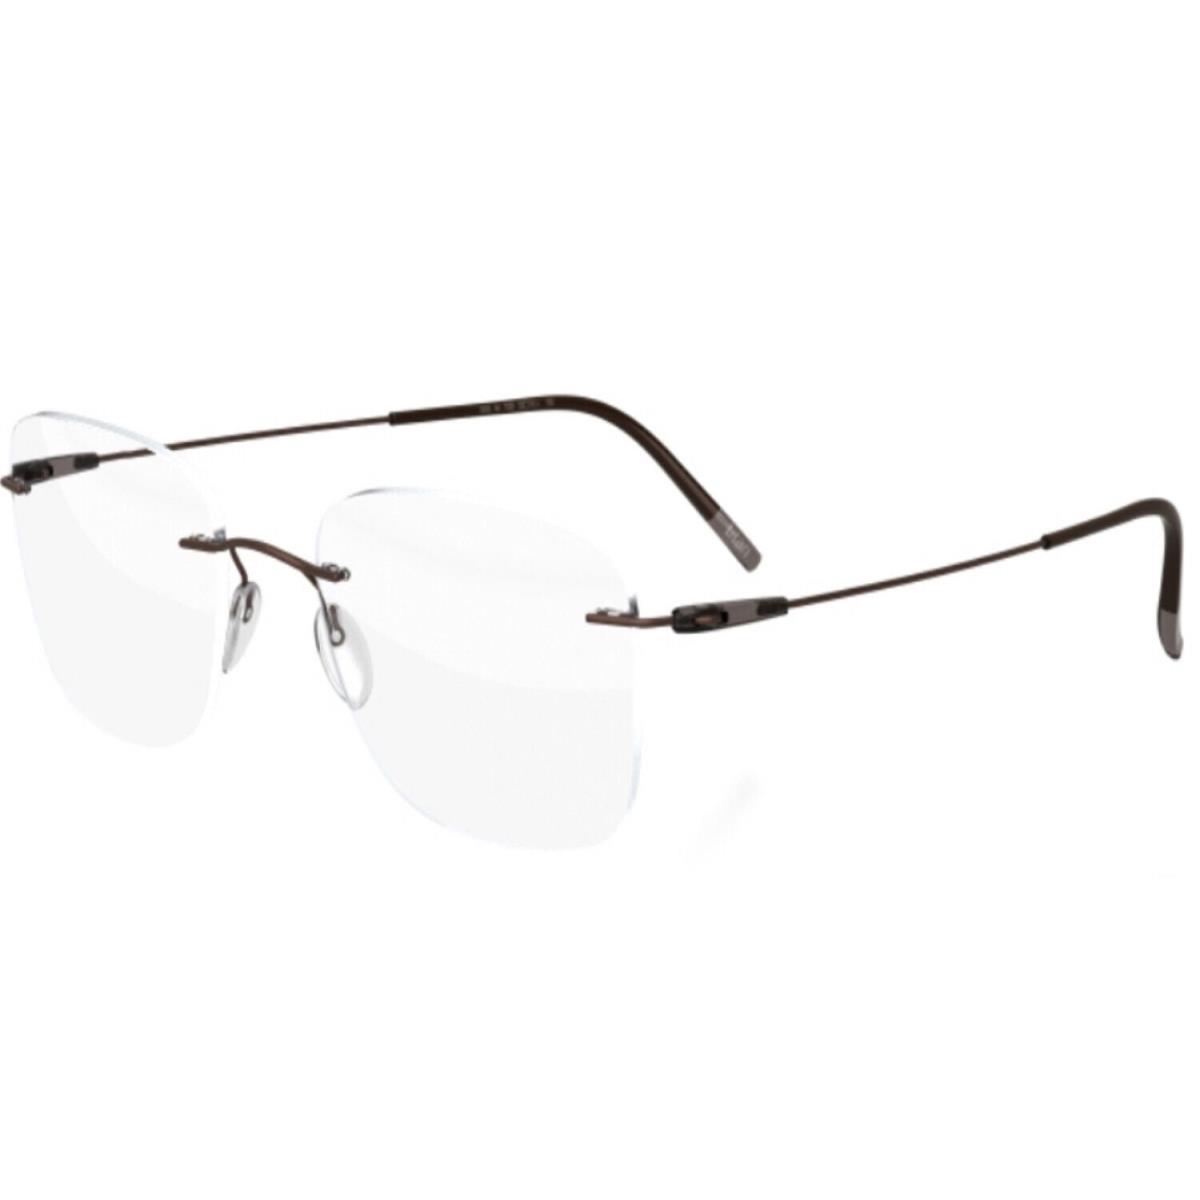 Silhouette eyeglasses THE WAVE Black Buffalo 51MM-19MM-140MM 5567-LV-9040*